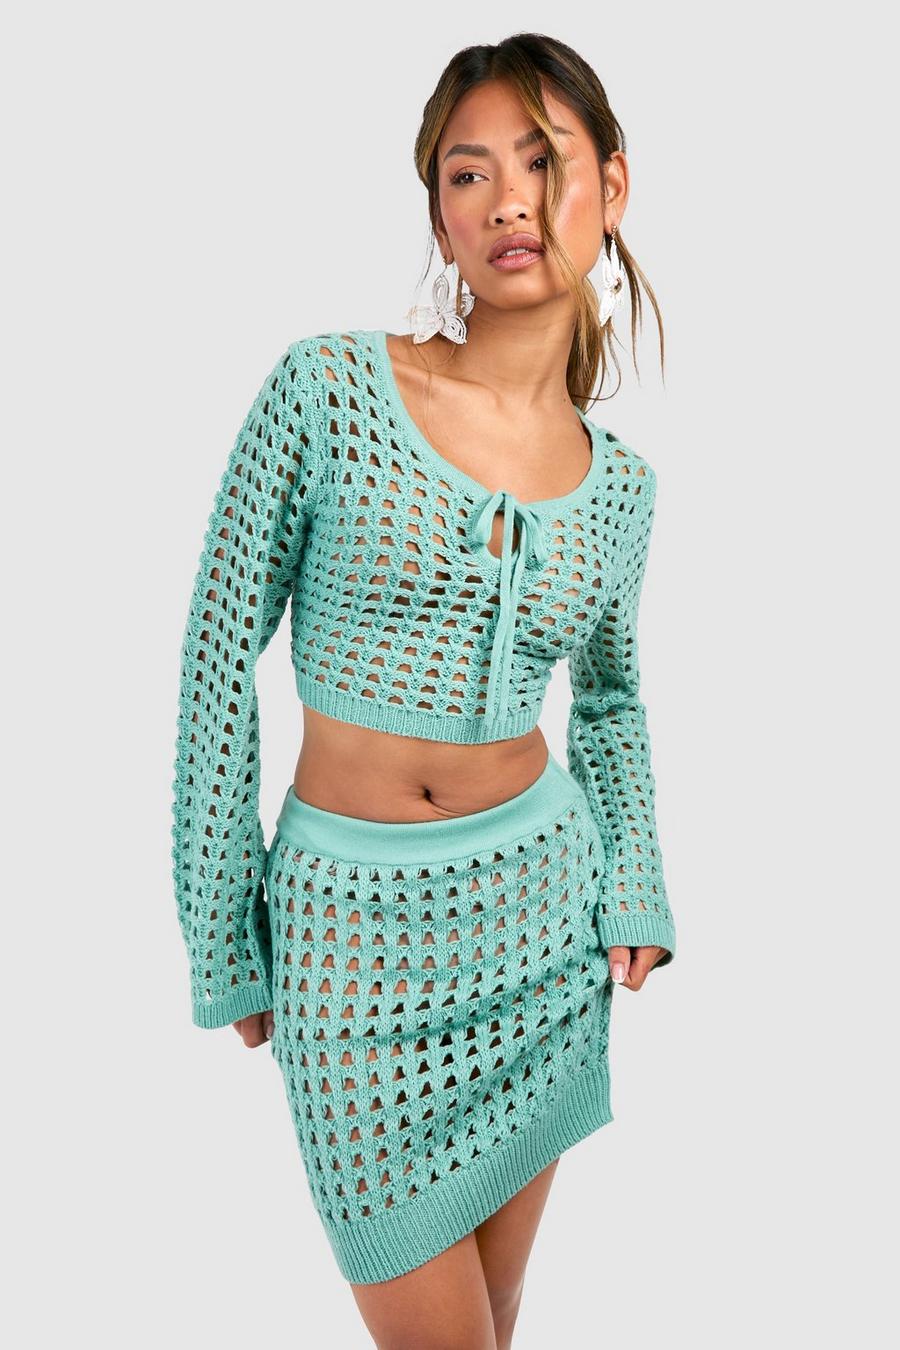 Turquoise Crochet Mini Skirt  